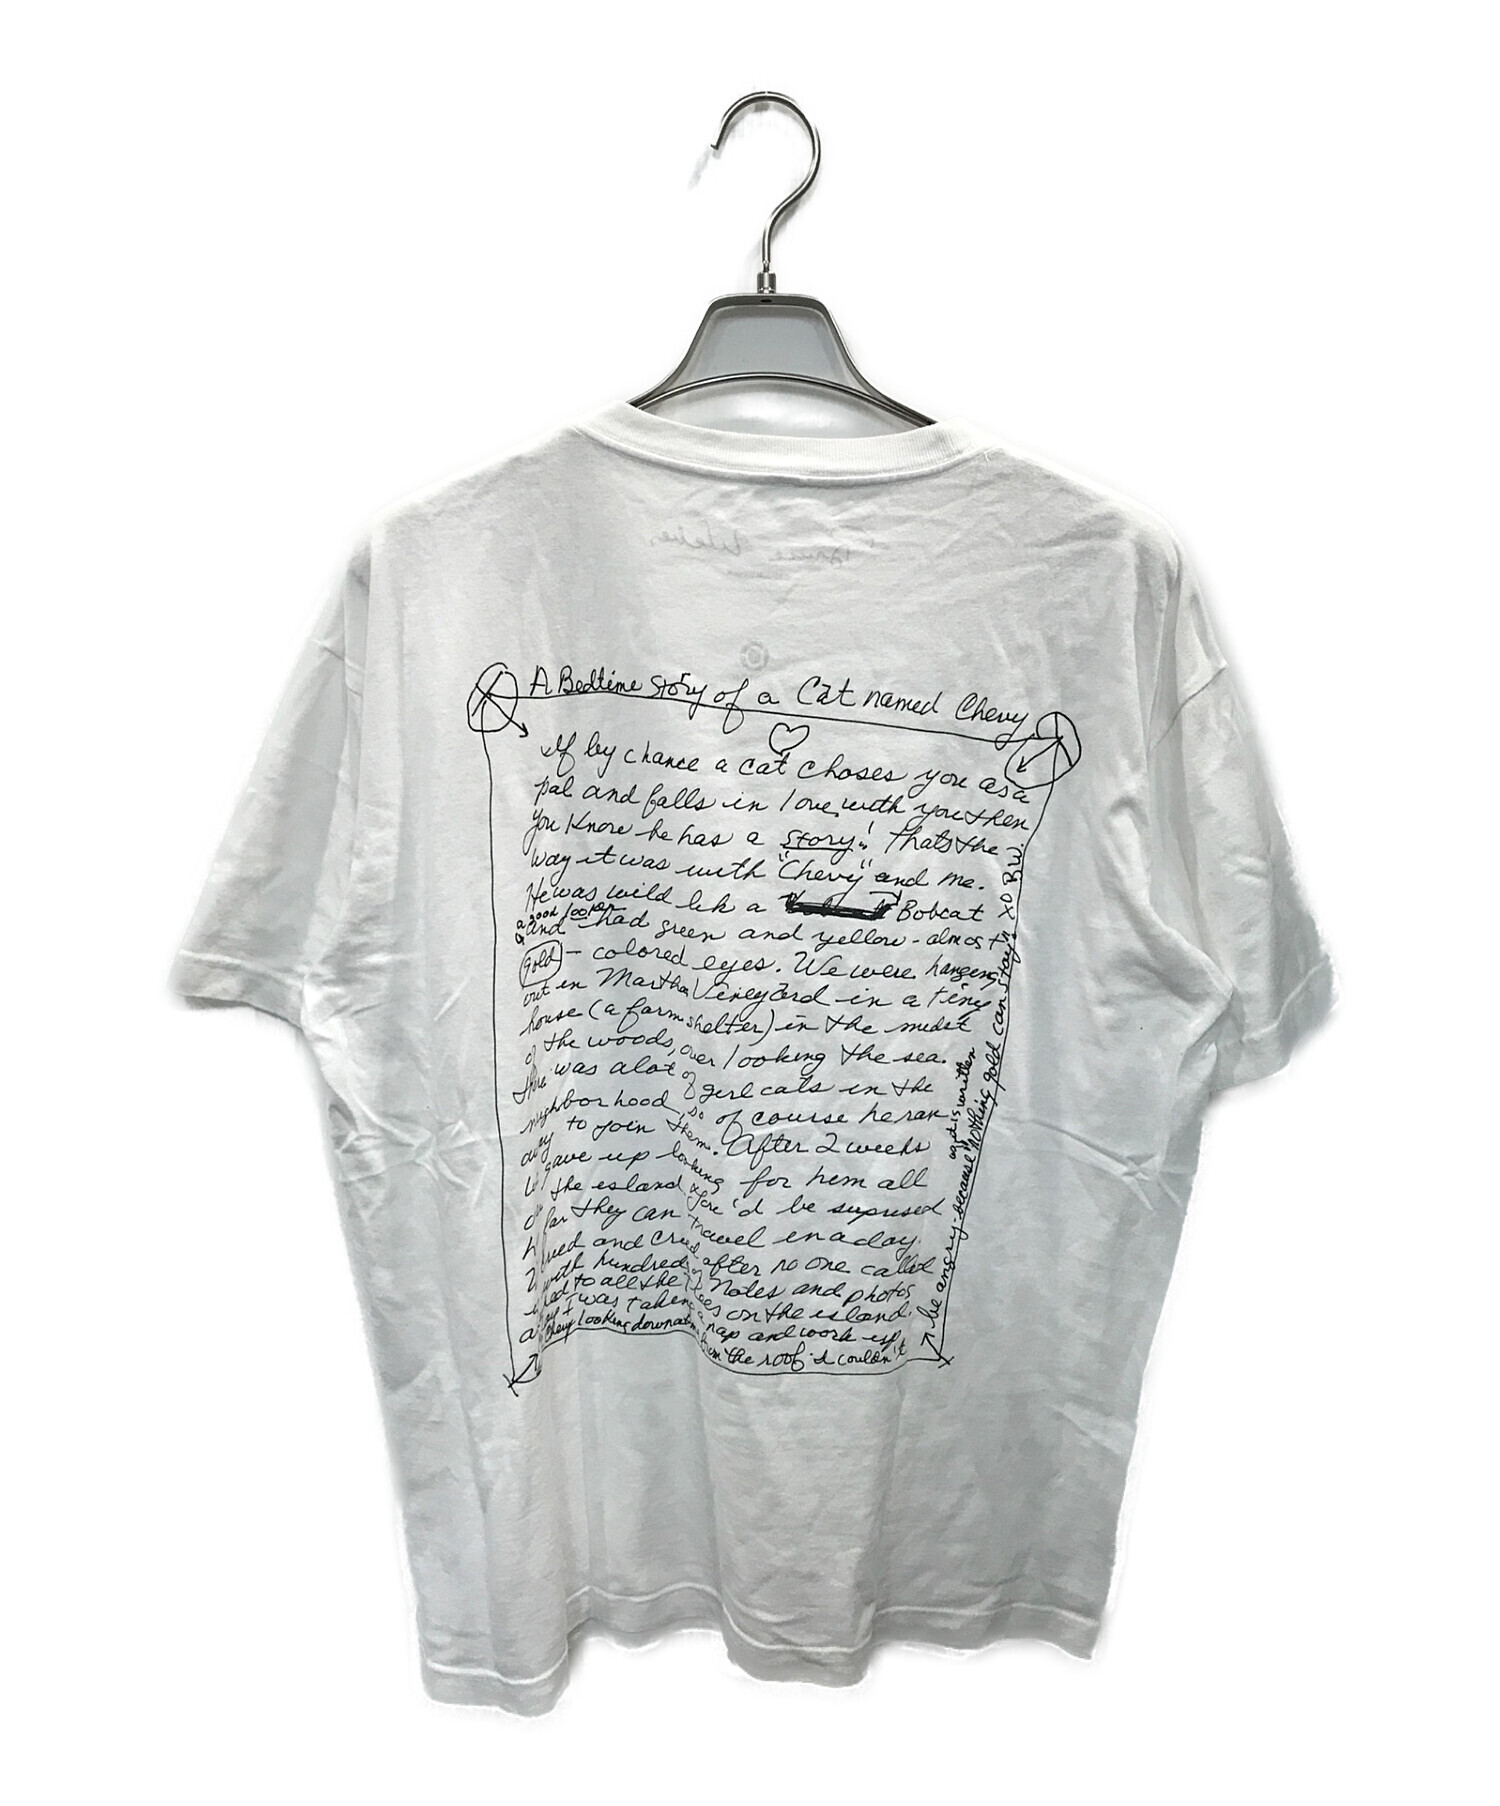 BRUCE WEBER (ブルース・ウェバー) BIOTOP (ビオトープ) 10c (テンシー) Anniversary Photo  T-shirts ホワイト サイズ:XL